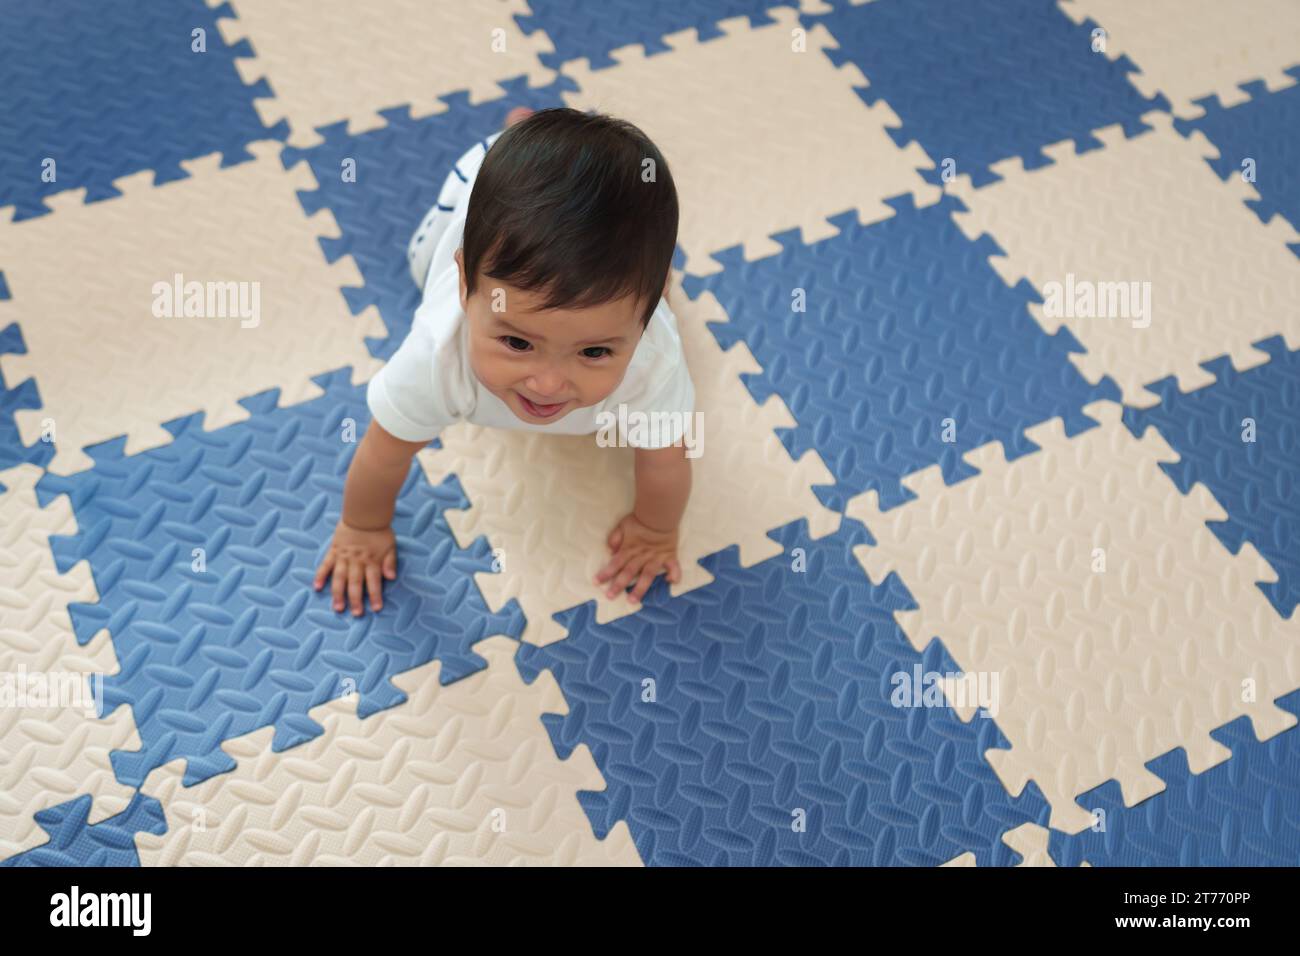 Blick von oben auf das glückliche Baby, das auf der Spielmatte oder dem Puzzle-Boden krabbelt Stockfoto